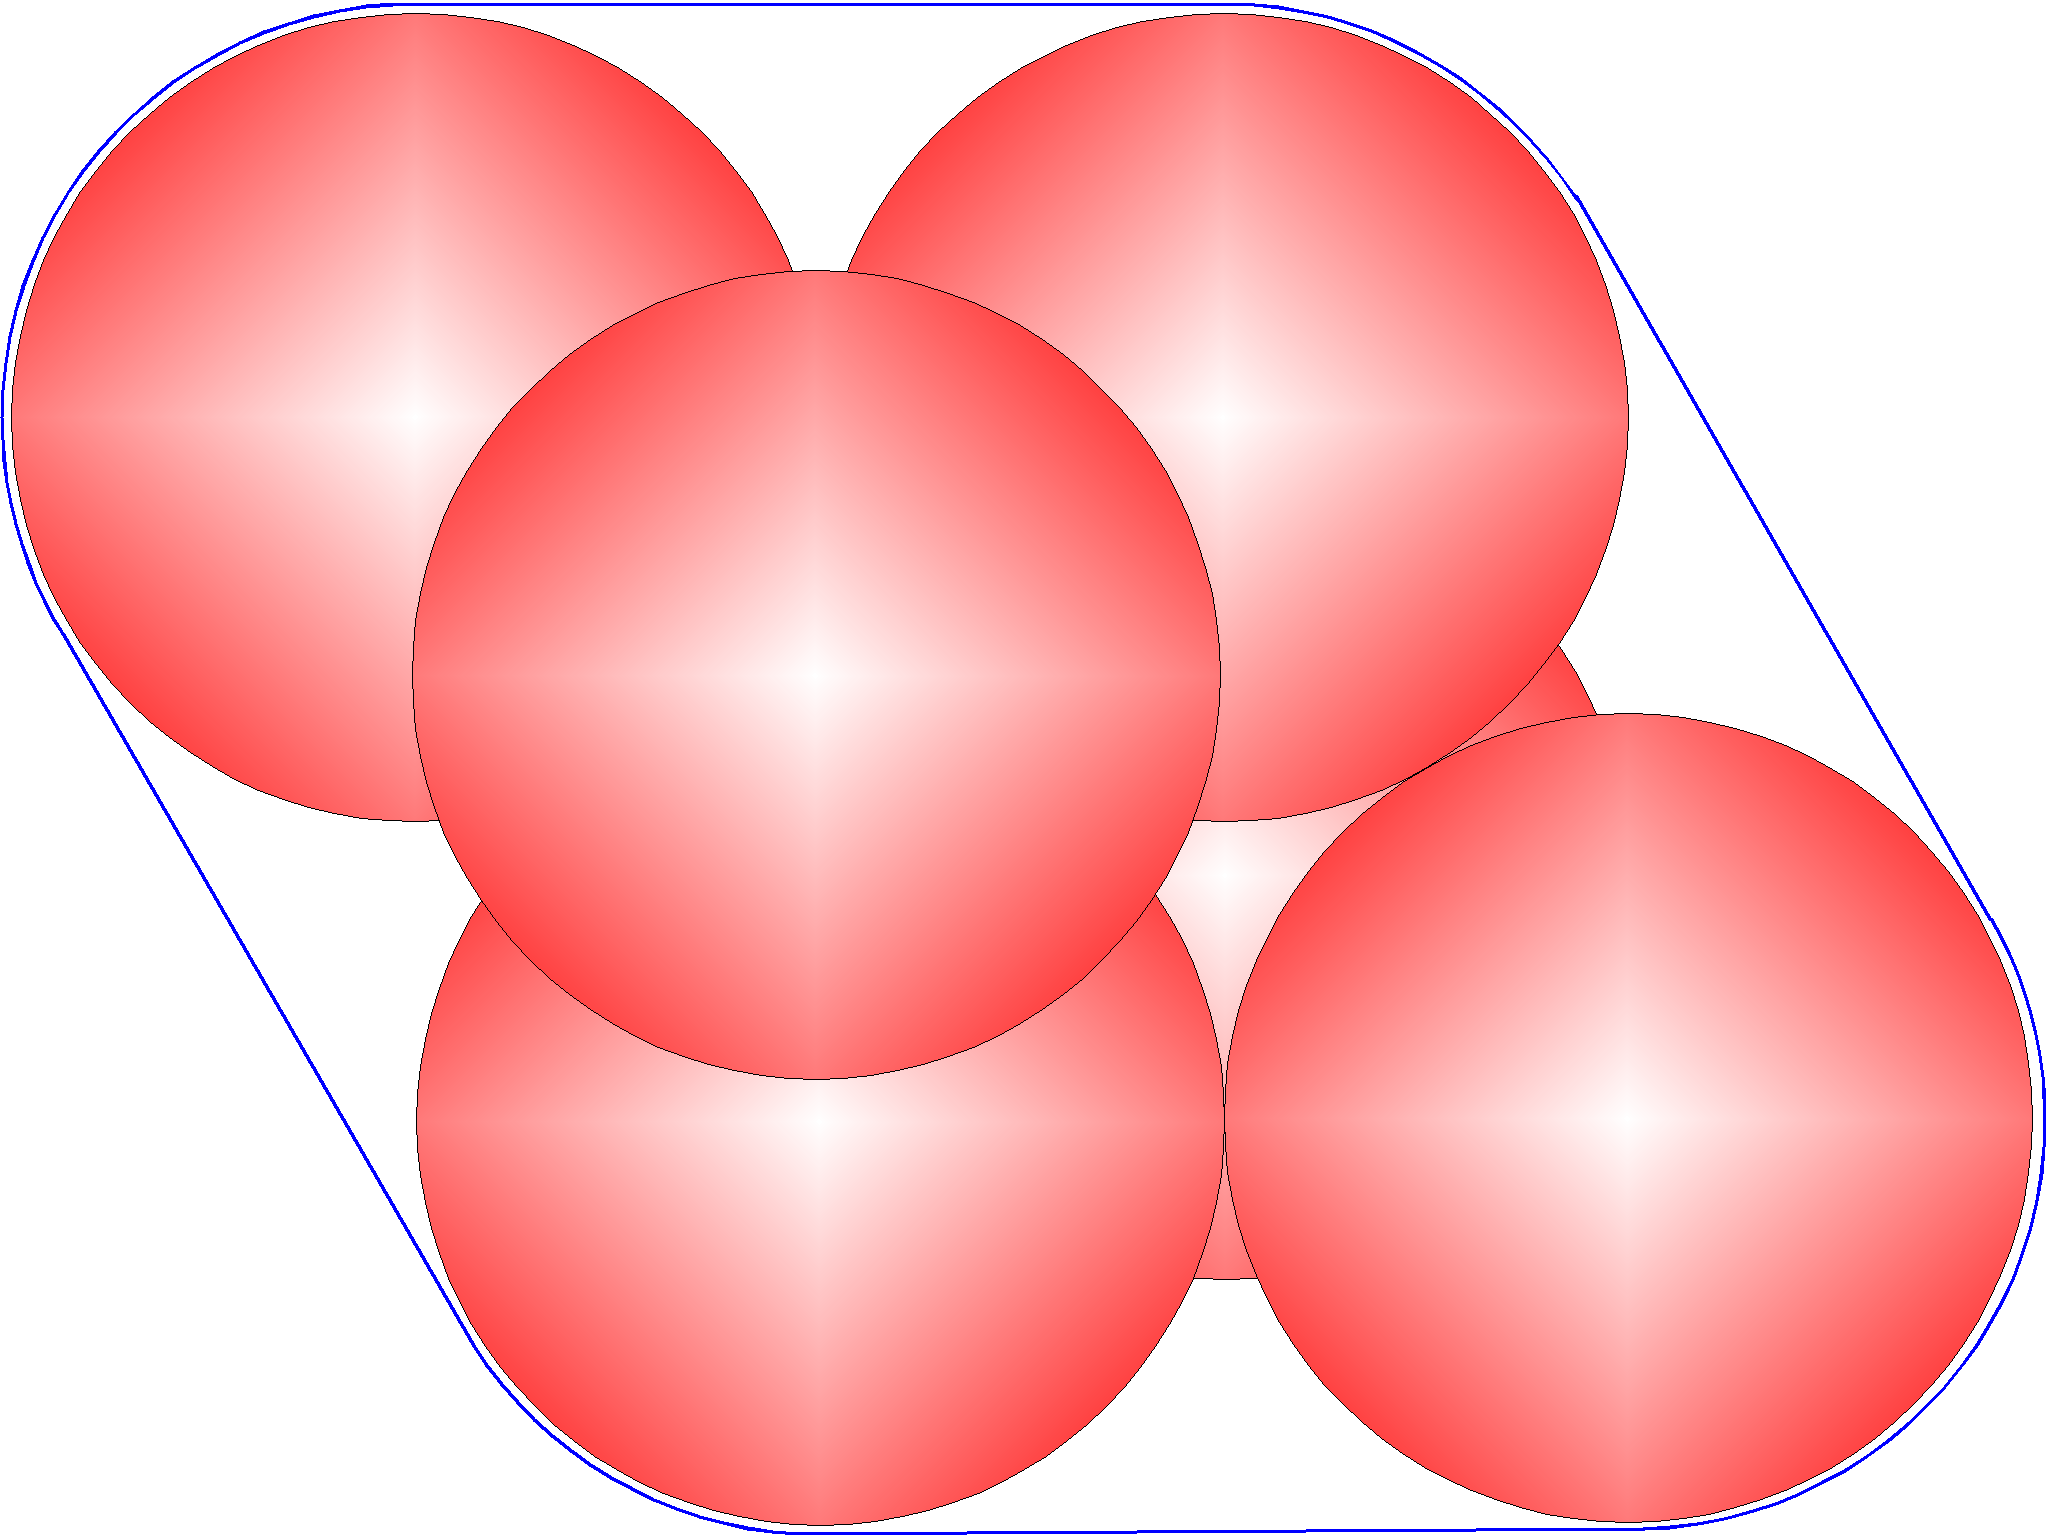 Cluster file. Упаковка шаров в пространстве. Кластер из 6 шаров. Плотная упаковка шаров в сфера. Упаковка шаров в восьмимерном пространстве.